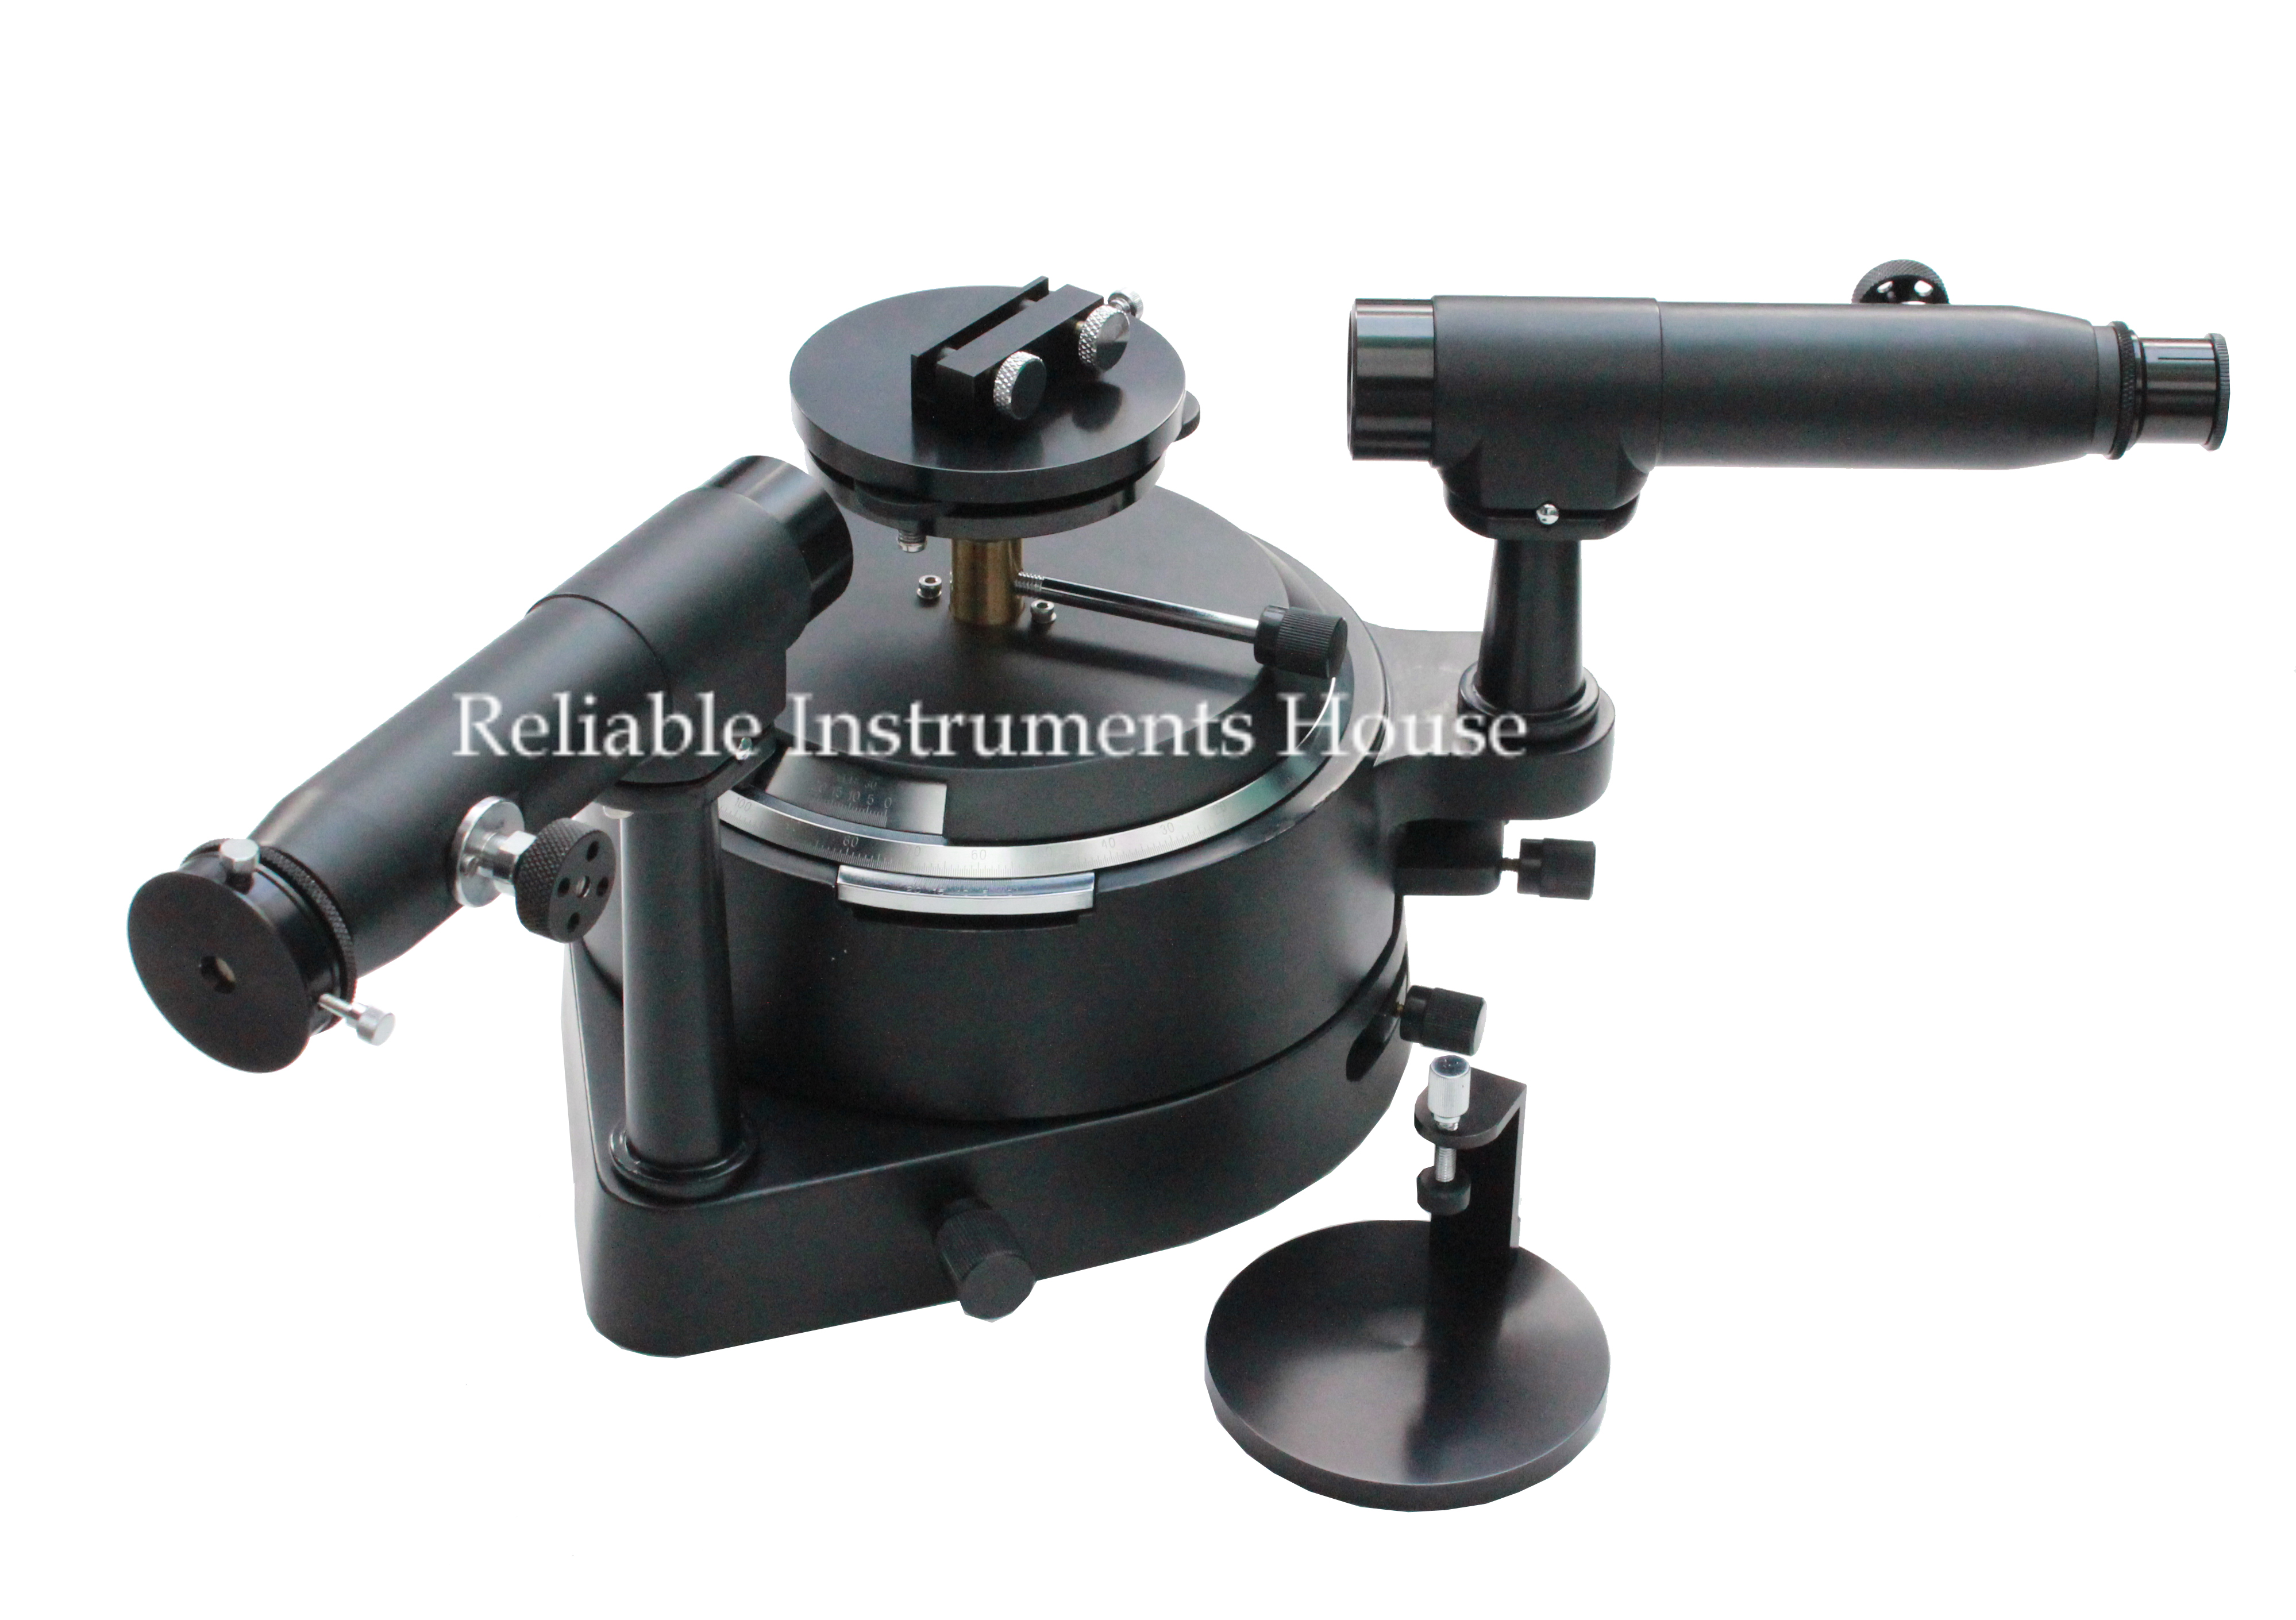 Advanced Spectrometer OM-6030 Image